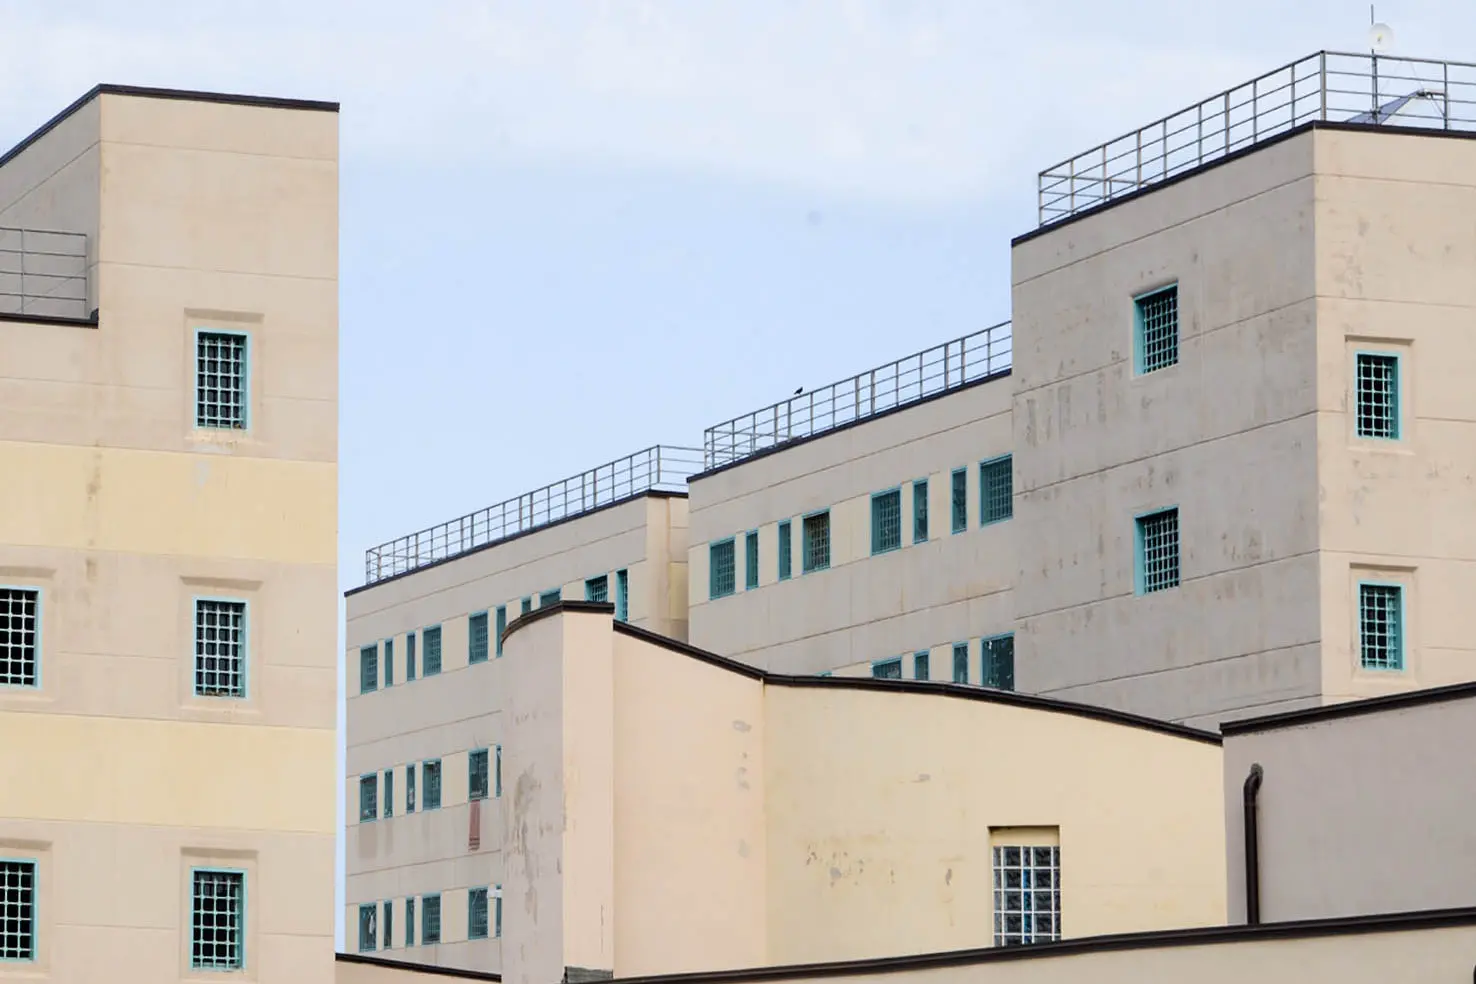 The Bancali prison in Sassari (archive / Calvi)